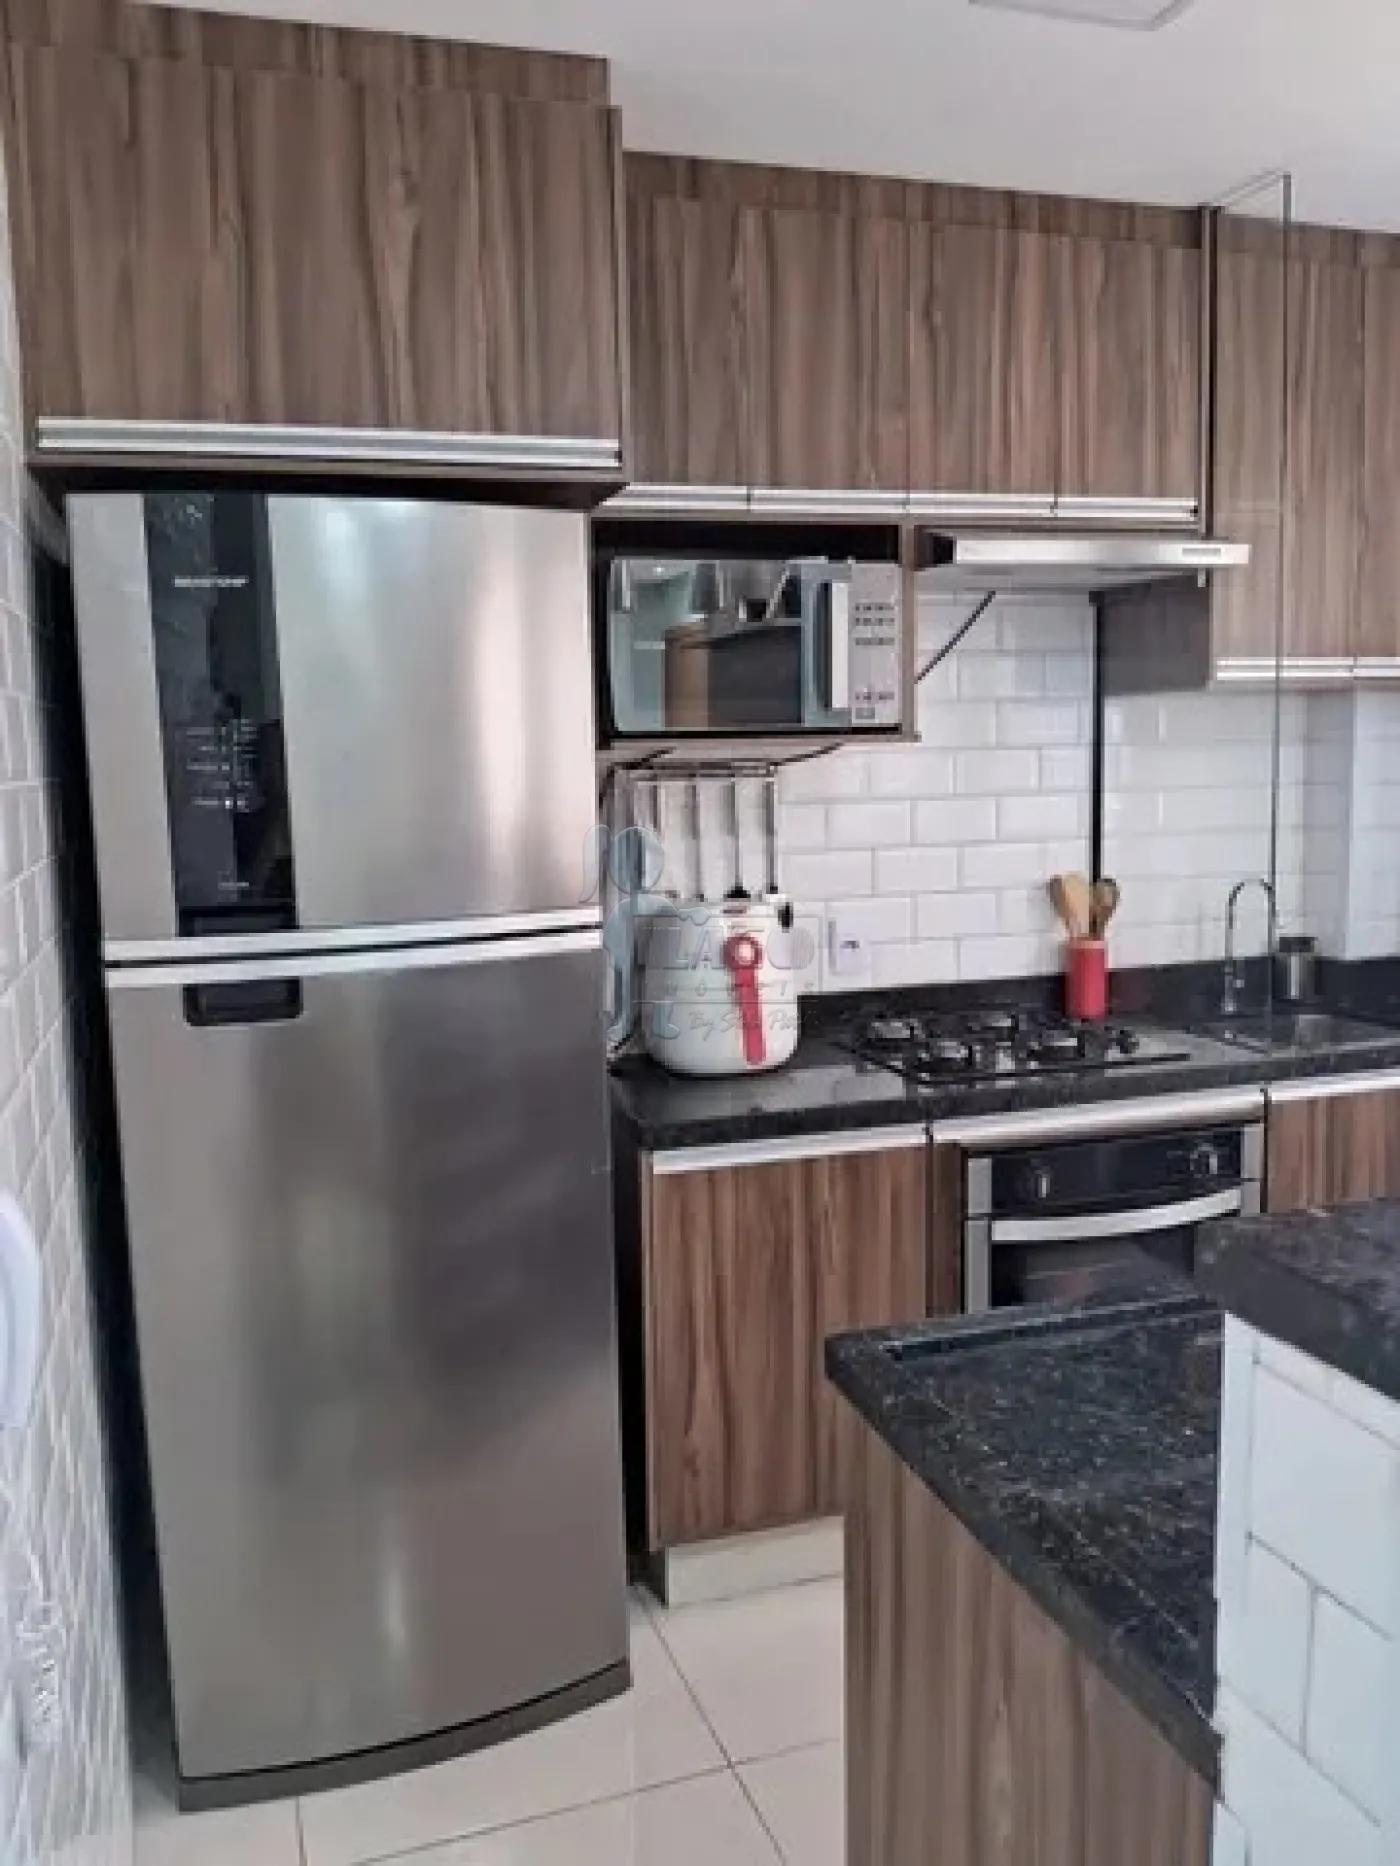 Comprar Apartamento / Padrão em Ribeirão Preto R$ 170.000,00 - Foto 6